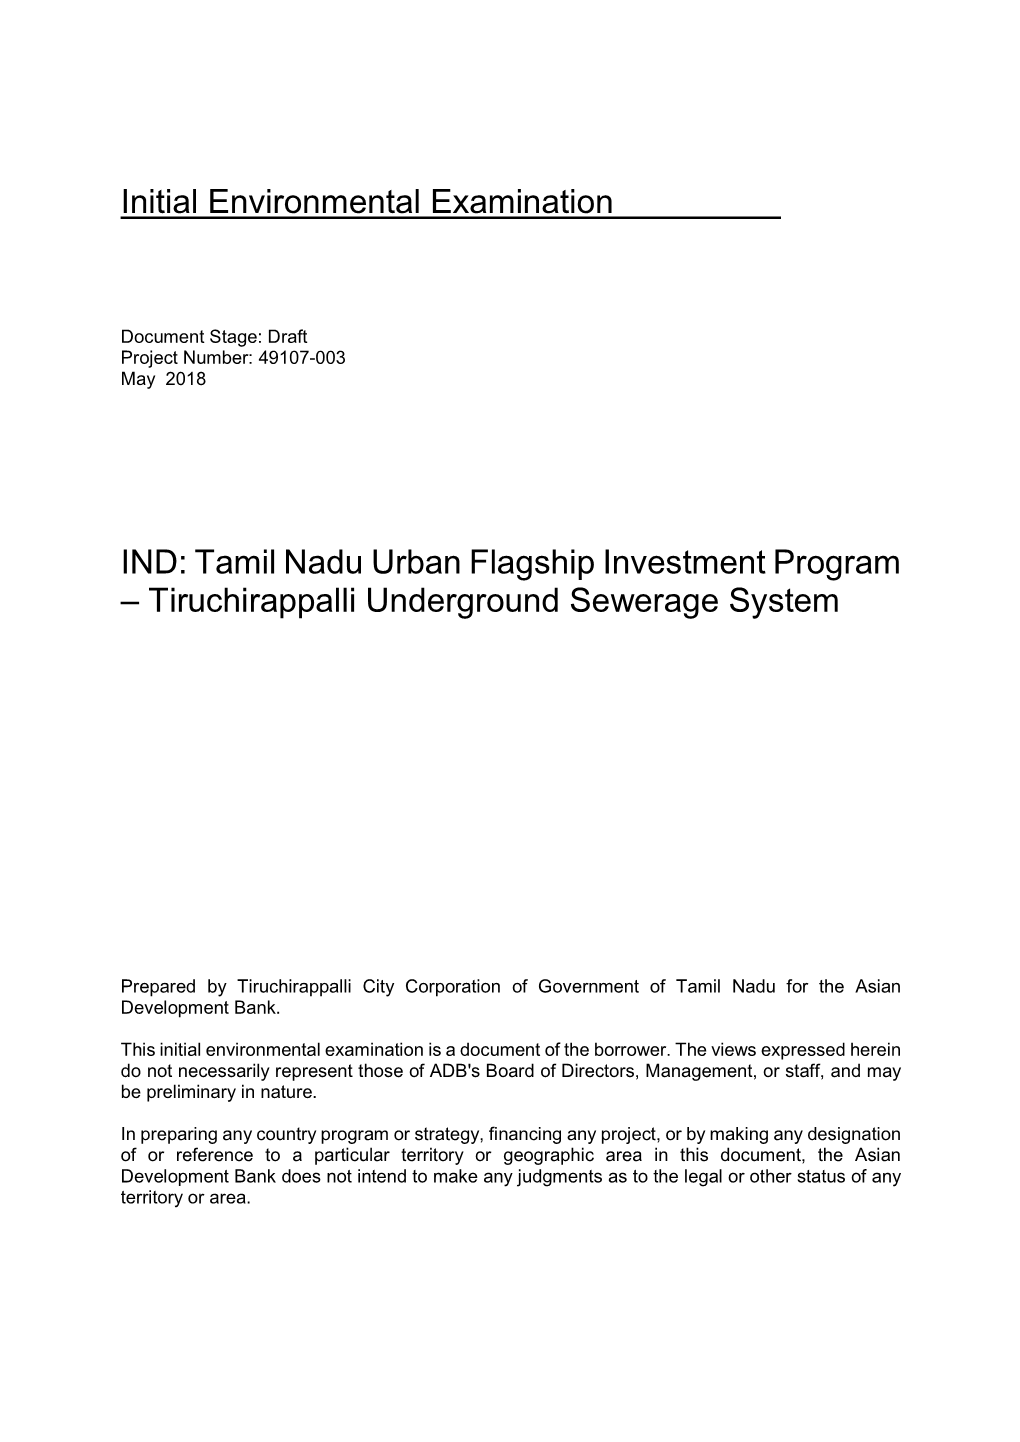 Tamil Nadu Urban Flagship Investment Program – Tiruchirappalli Underground Sewerage System